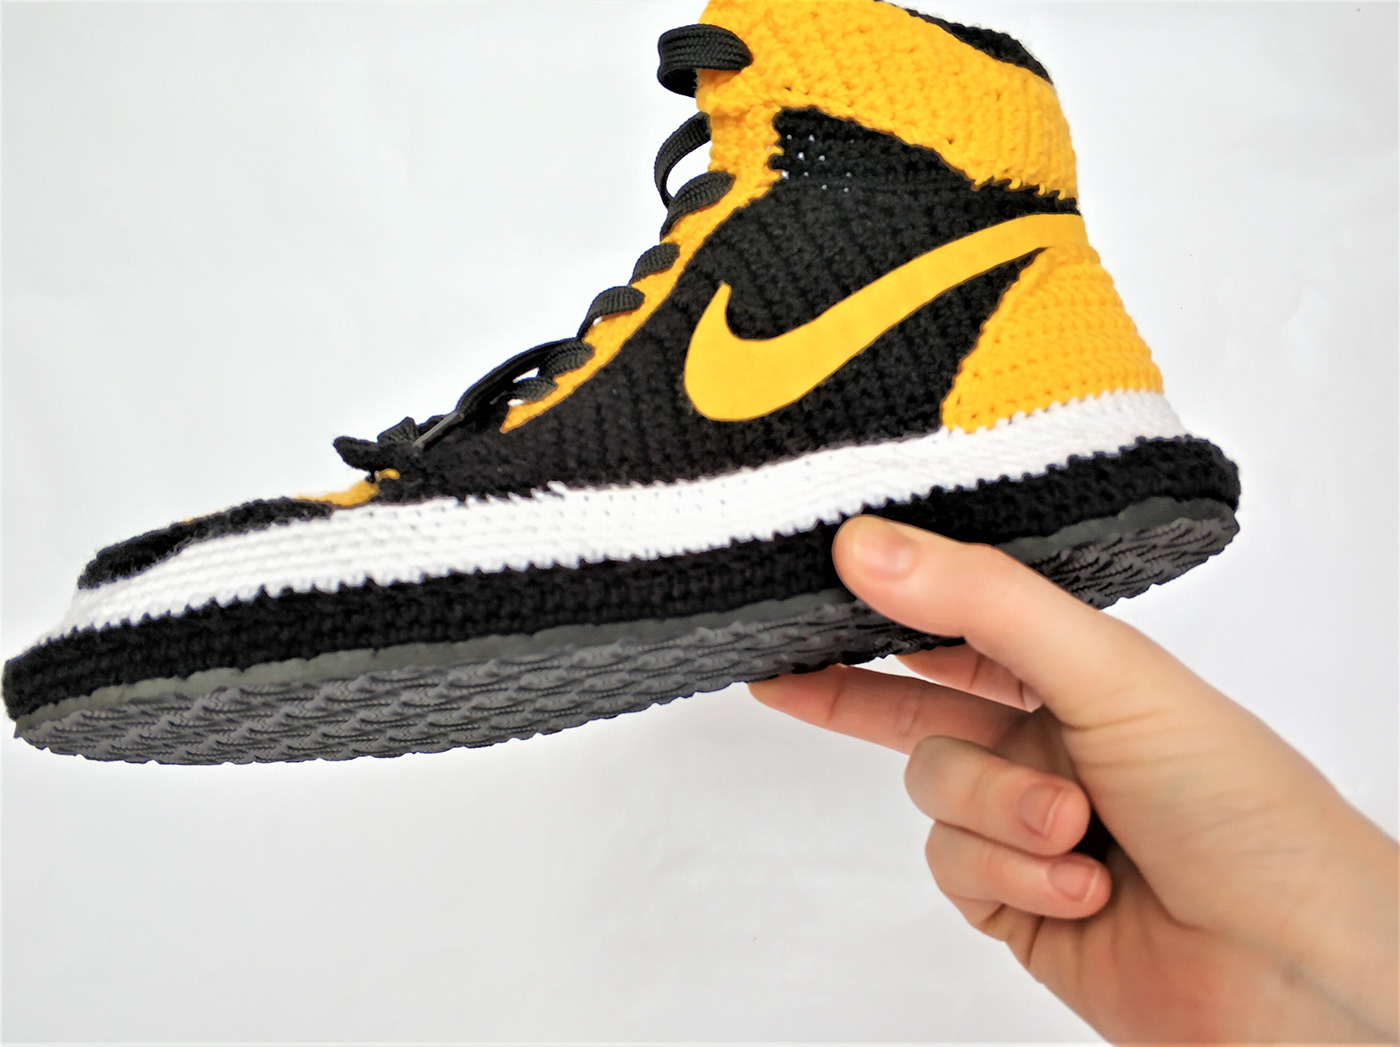 aır jordan Nıke   slıppers NBA converse aır max custom jordan sneakers crochet shoes handmade slippers